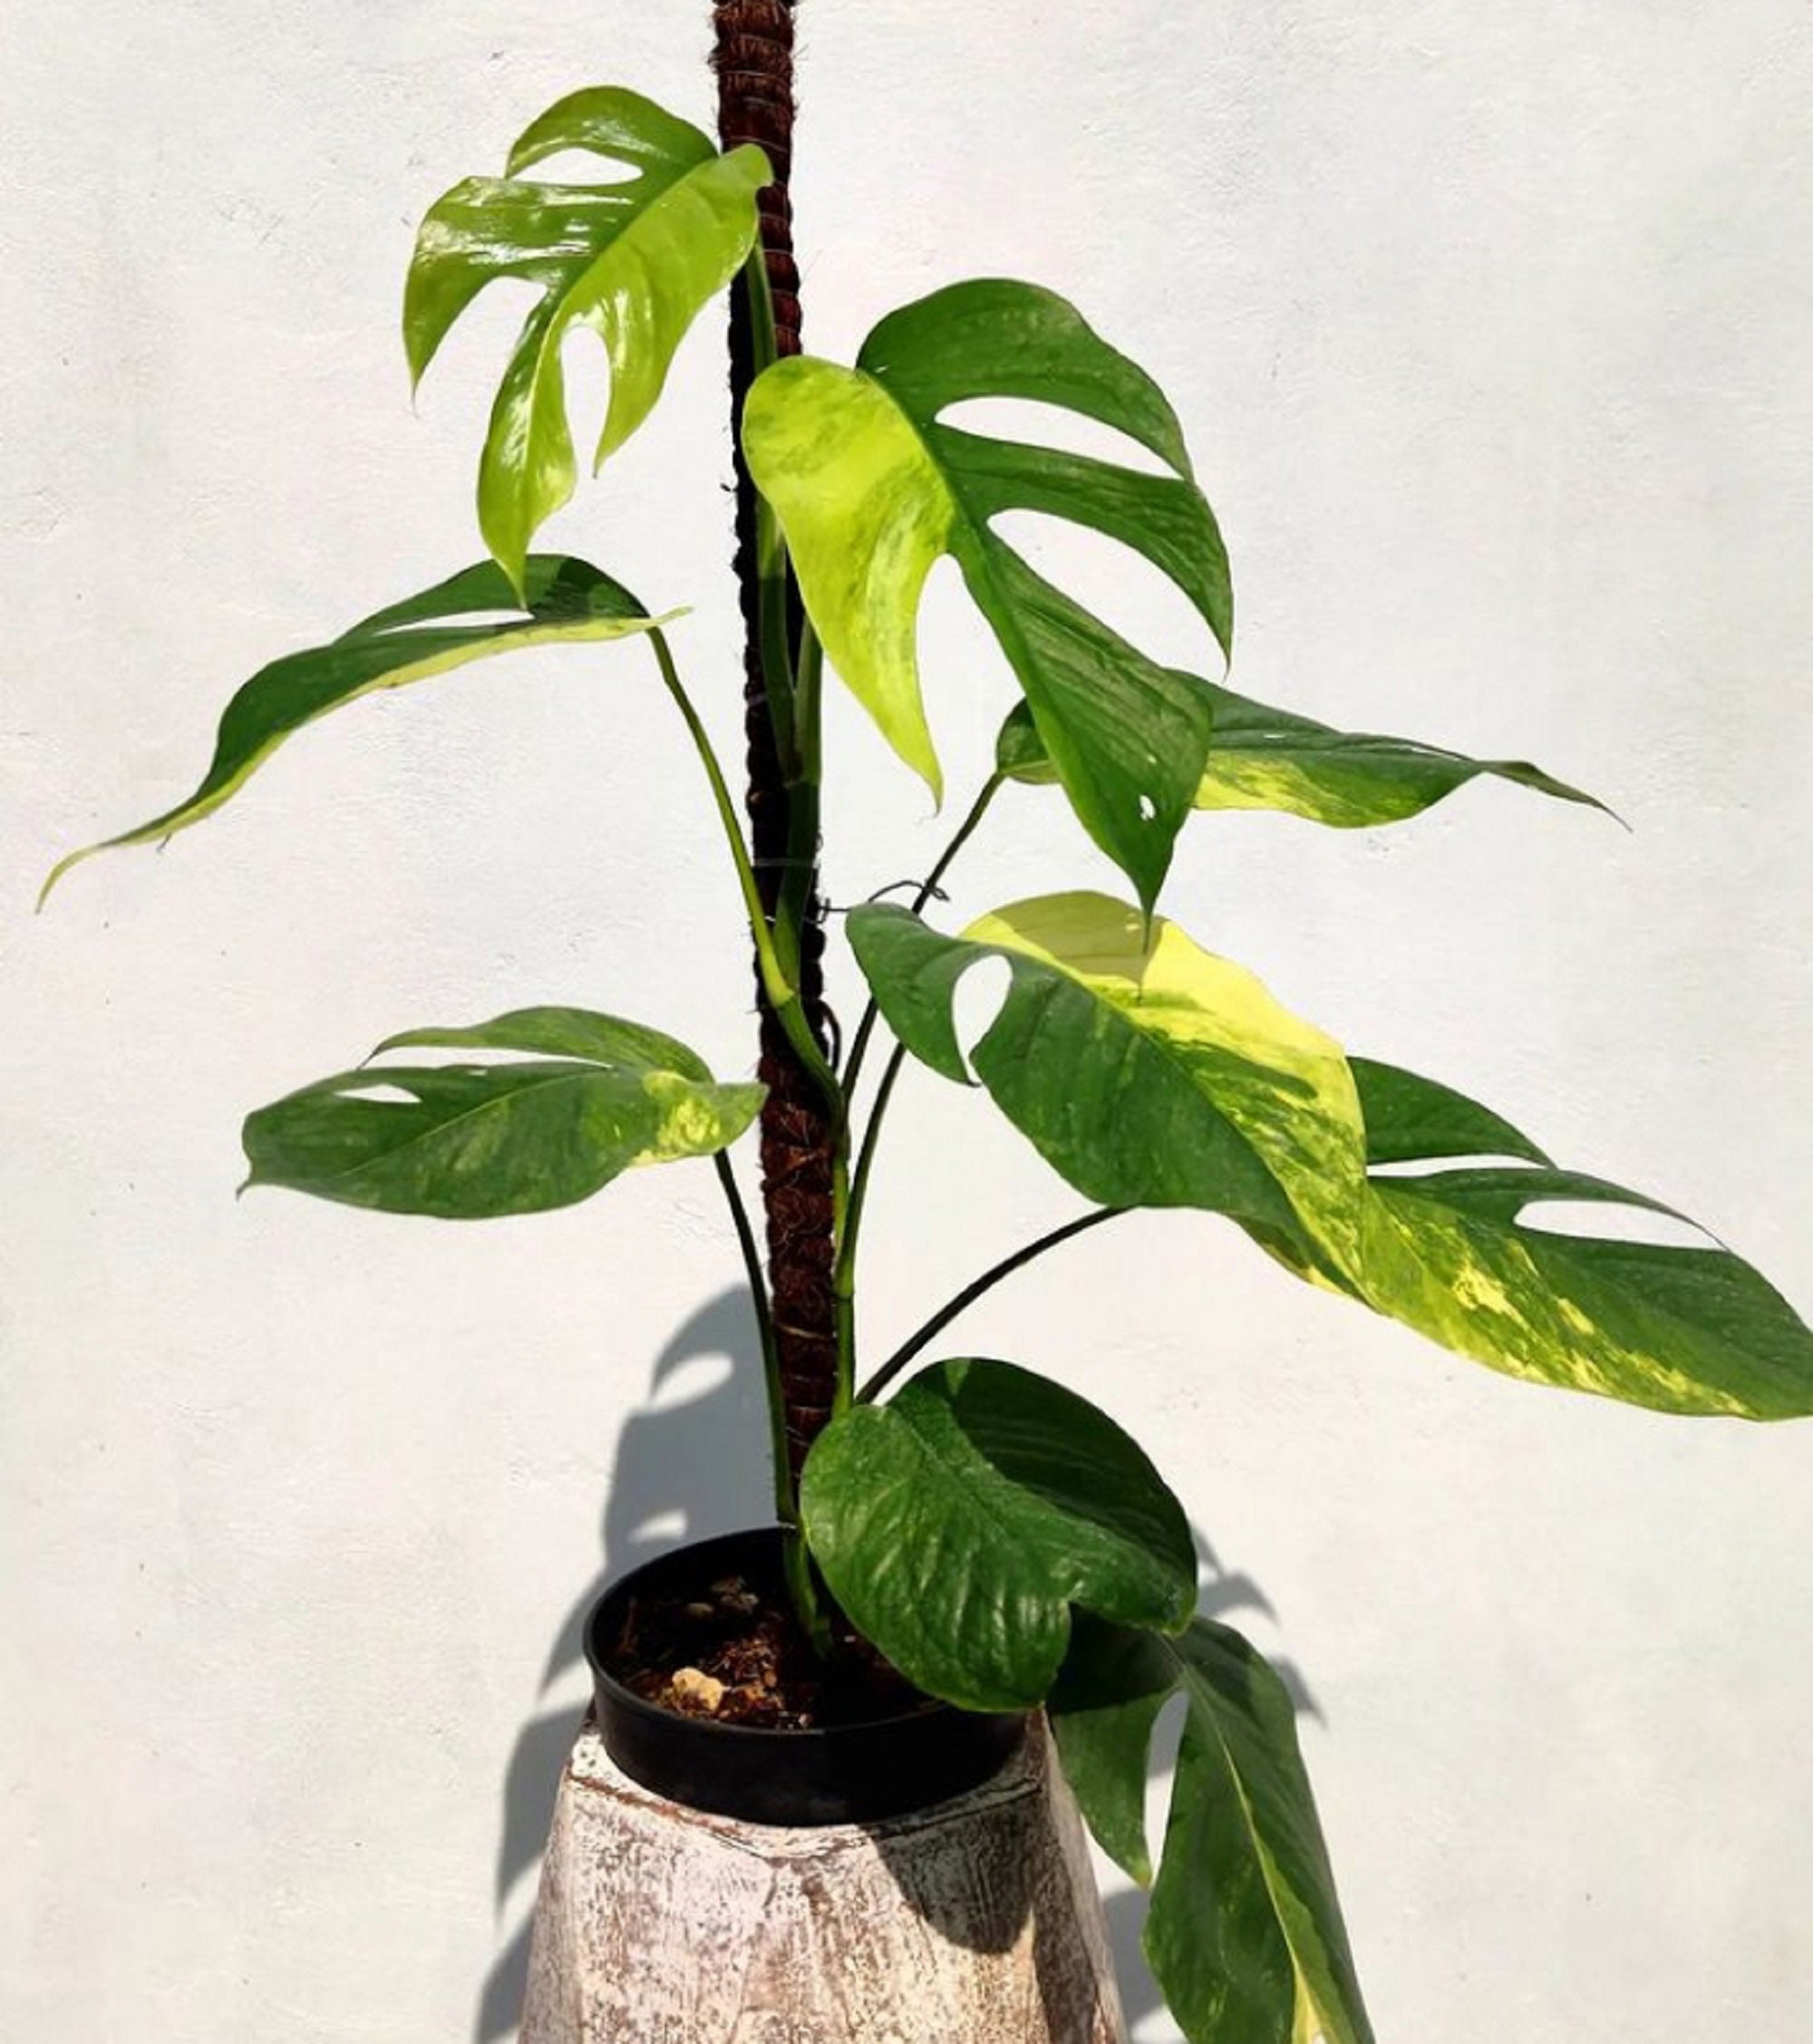 Epipremnum pinnatum 'Aurea' variegata ('Yellow Flame')